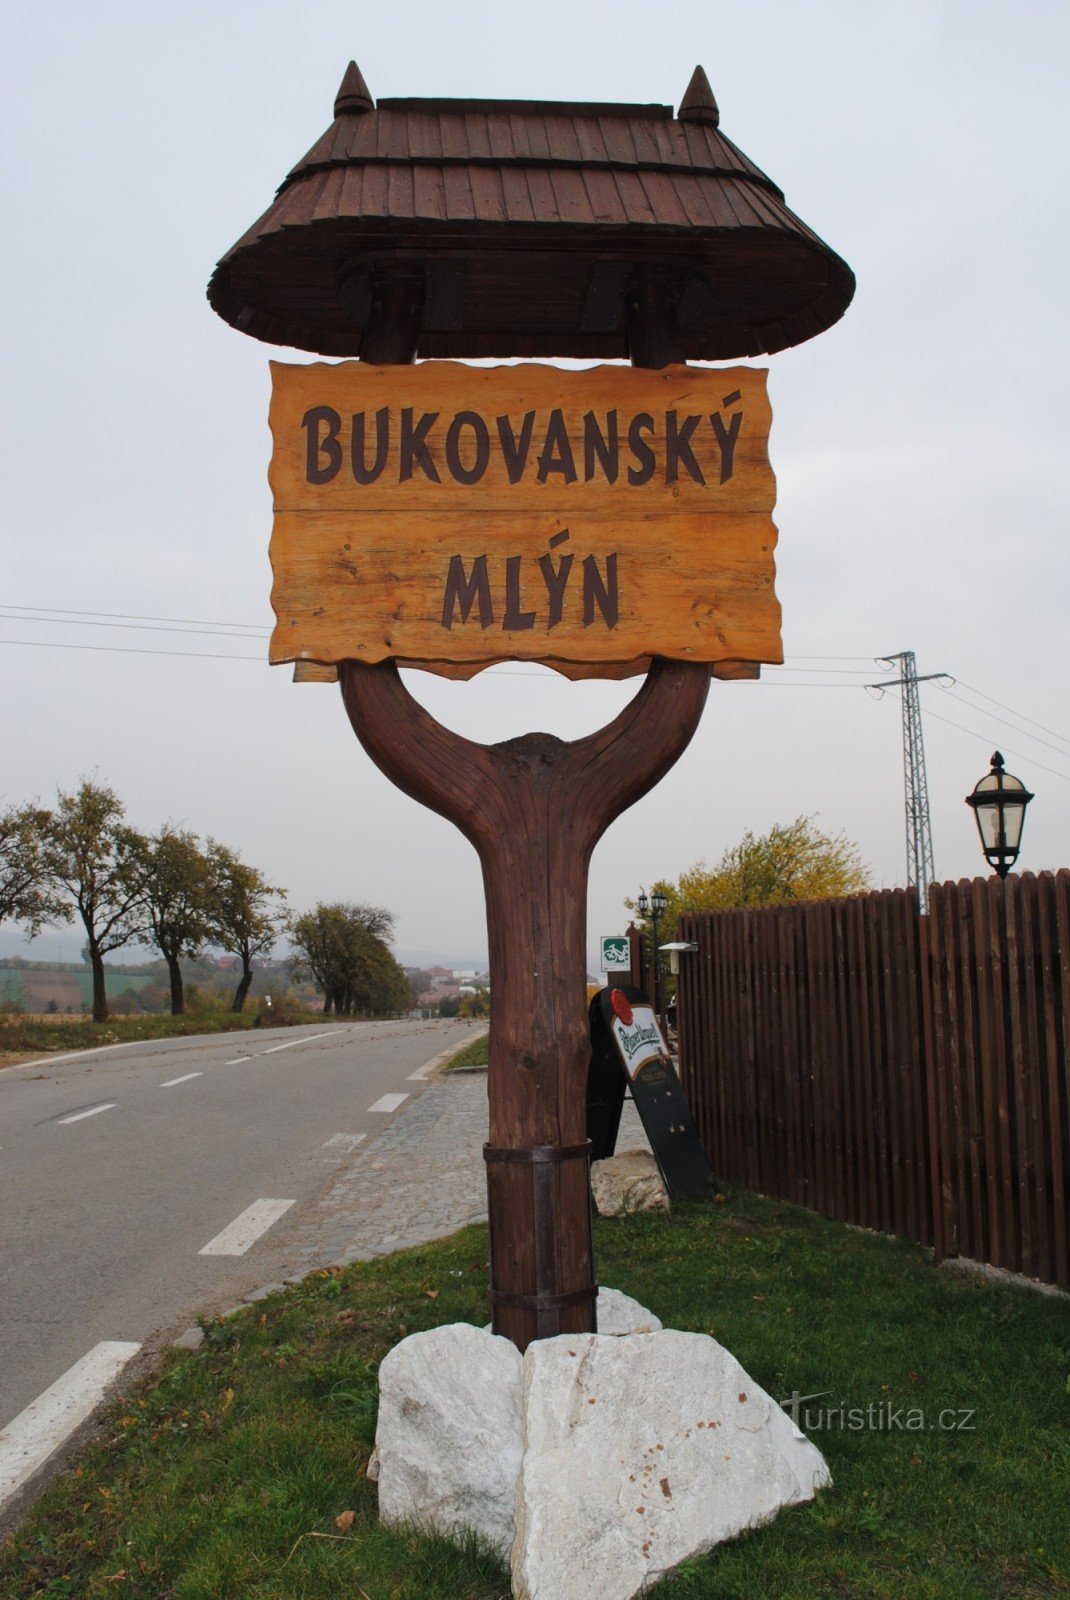 Bukovany mylly ***